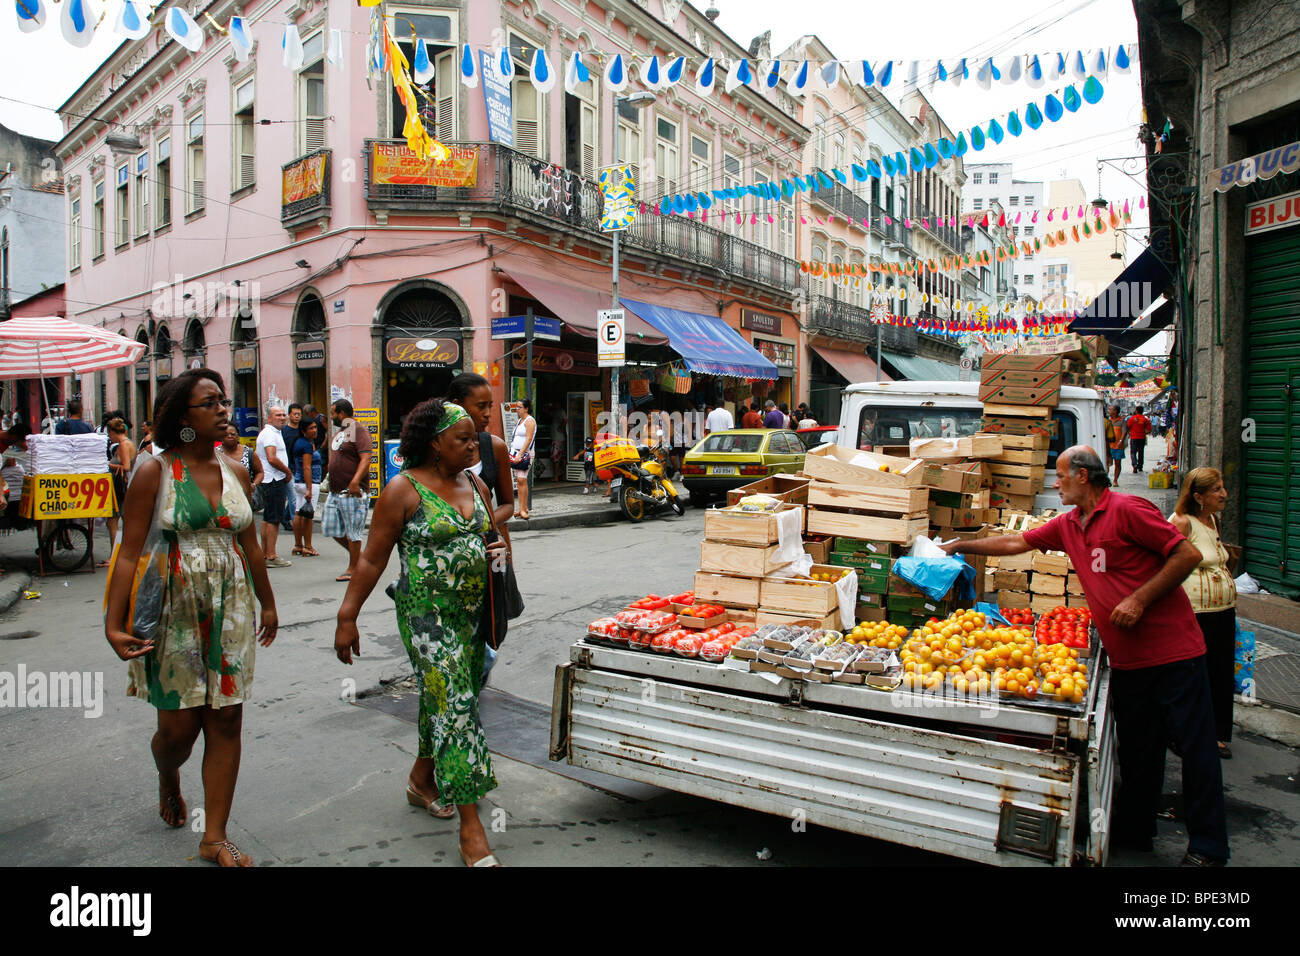 Street scene in the Saara bazaar area at the Centro, Rio's downtown. Rio de Janeiro, Brazil. Stock Photo